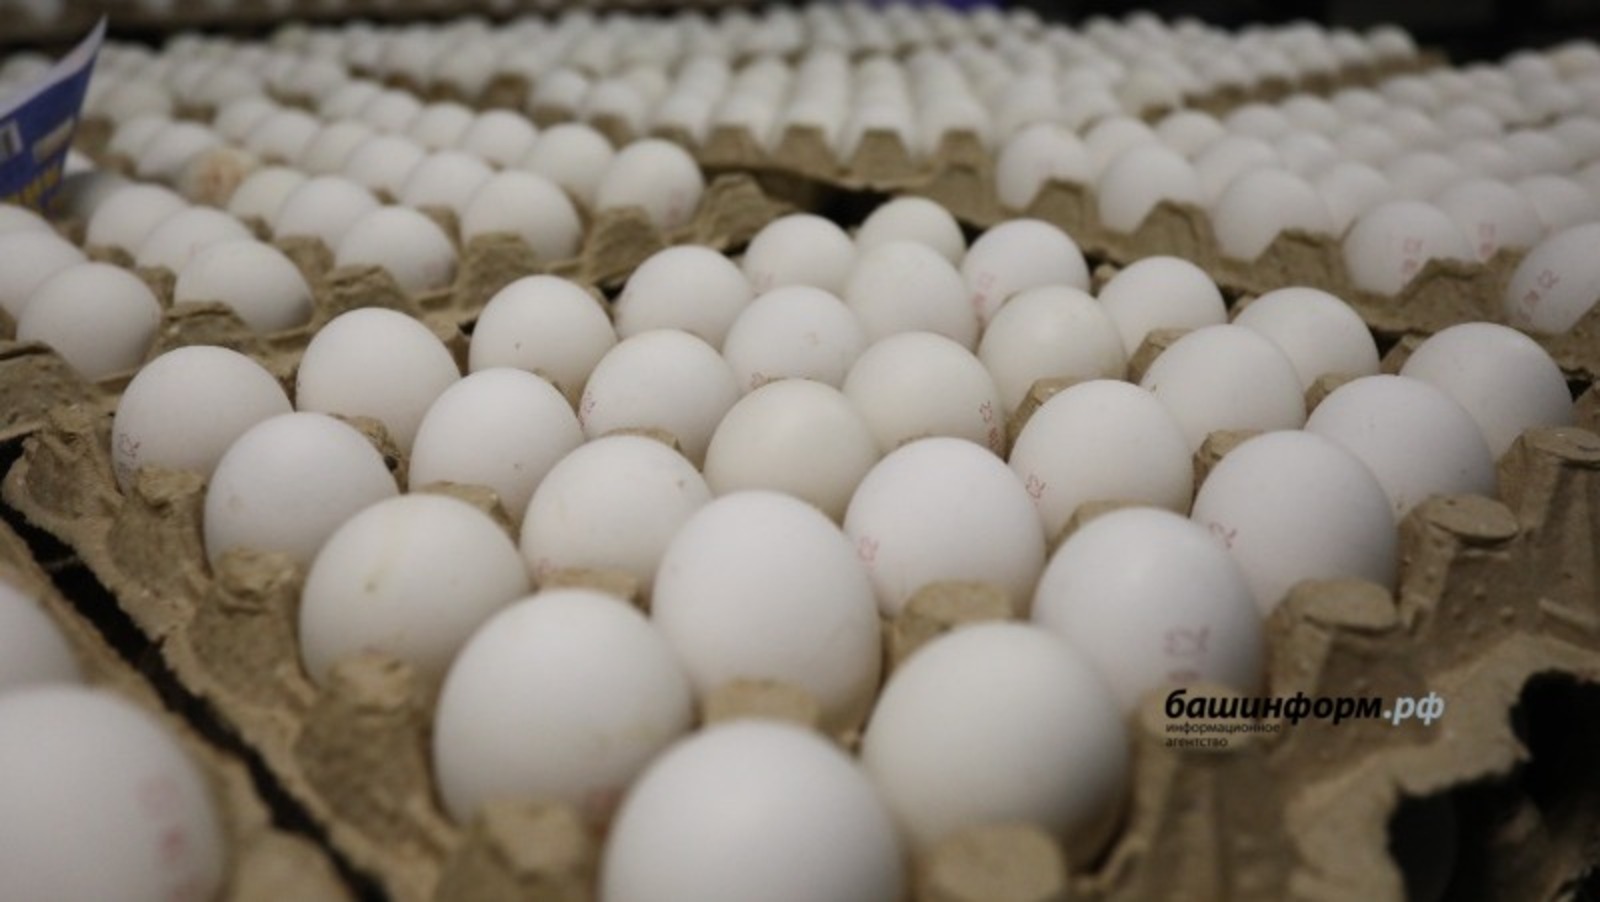 УФАС по Башкирии потребовало от «Пятерочки» снизить цены на куриные яйца